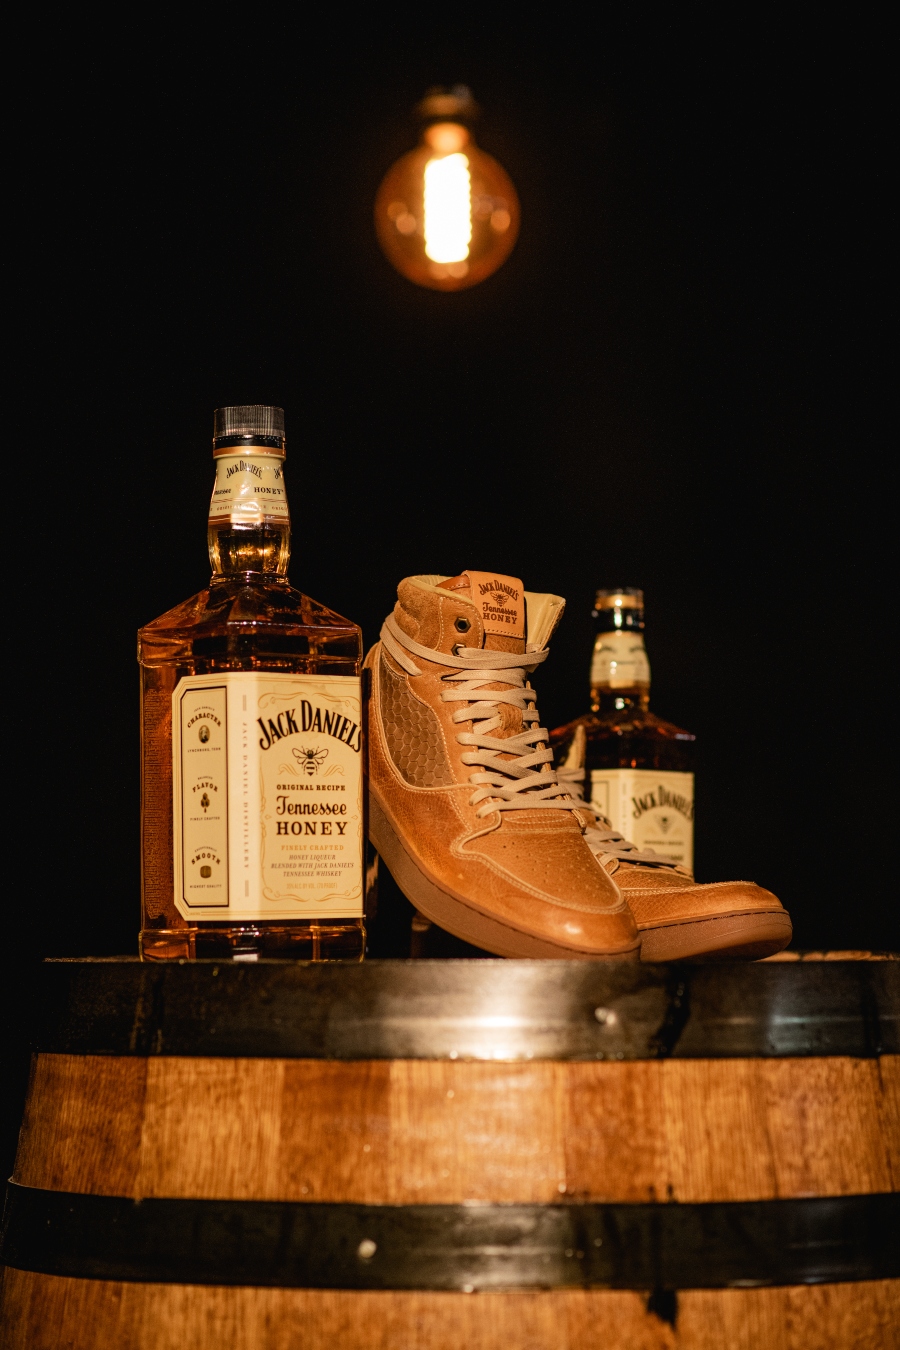 Sneaker de colaboración entre Shoe Surgeon y Jack Daniels